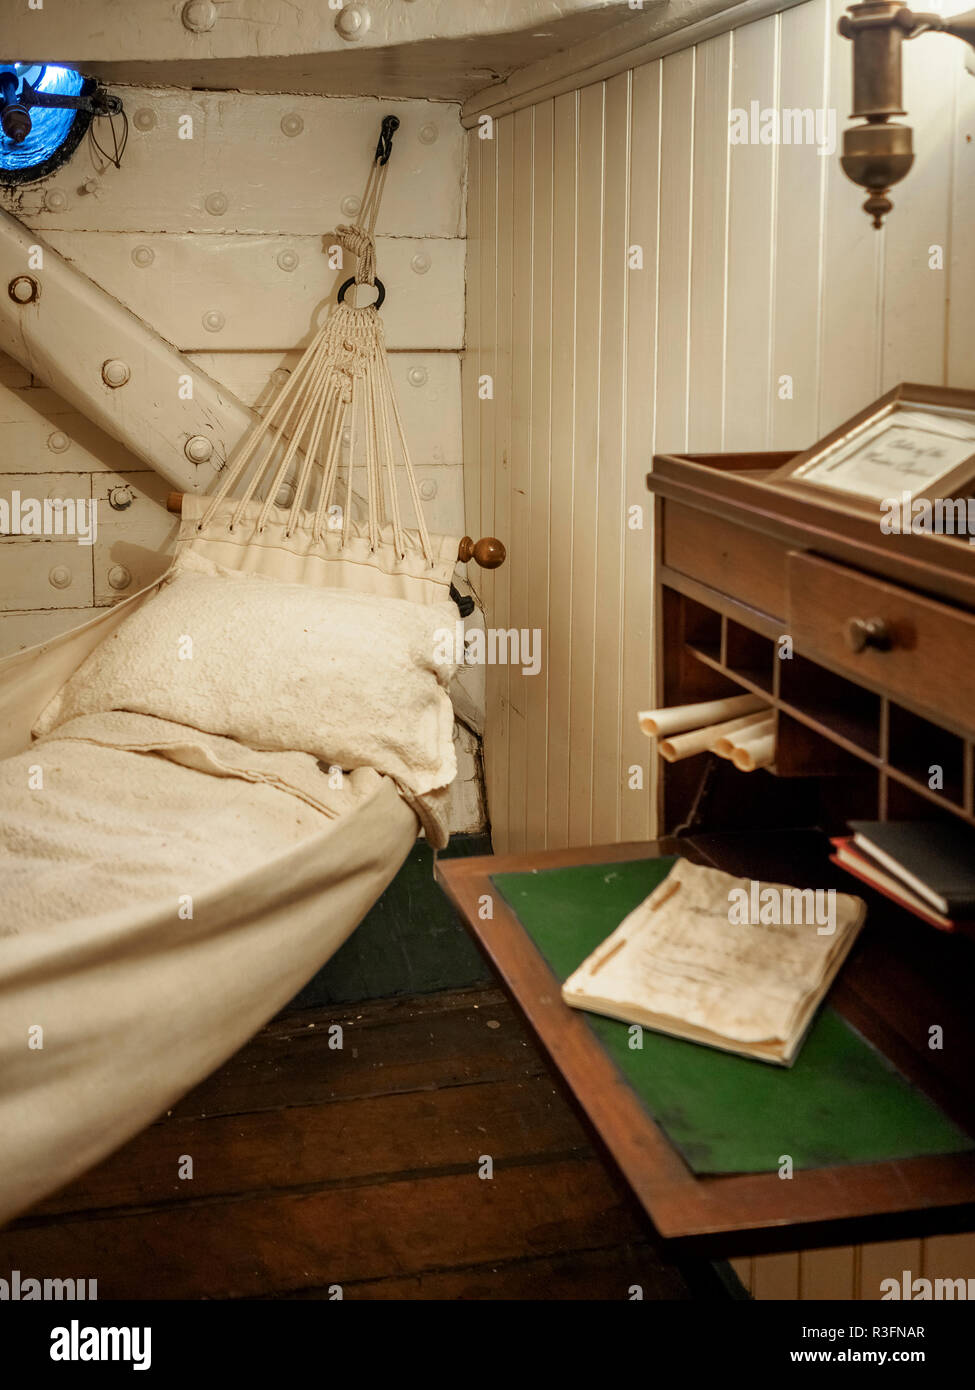 Chambre à coucher du capitaine de navire de guerre la plus ancienne du monde encore à flot, c.-à-d Consituttion - USS Constitution frégate américaine à Boston, États-Unis Banque D'Images